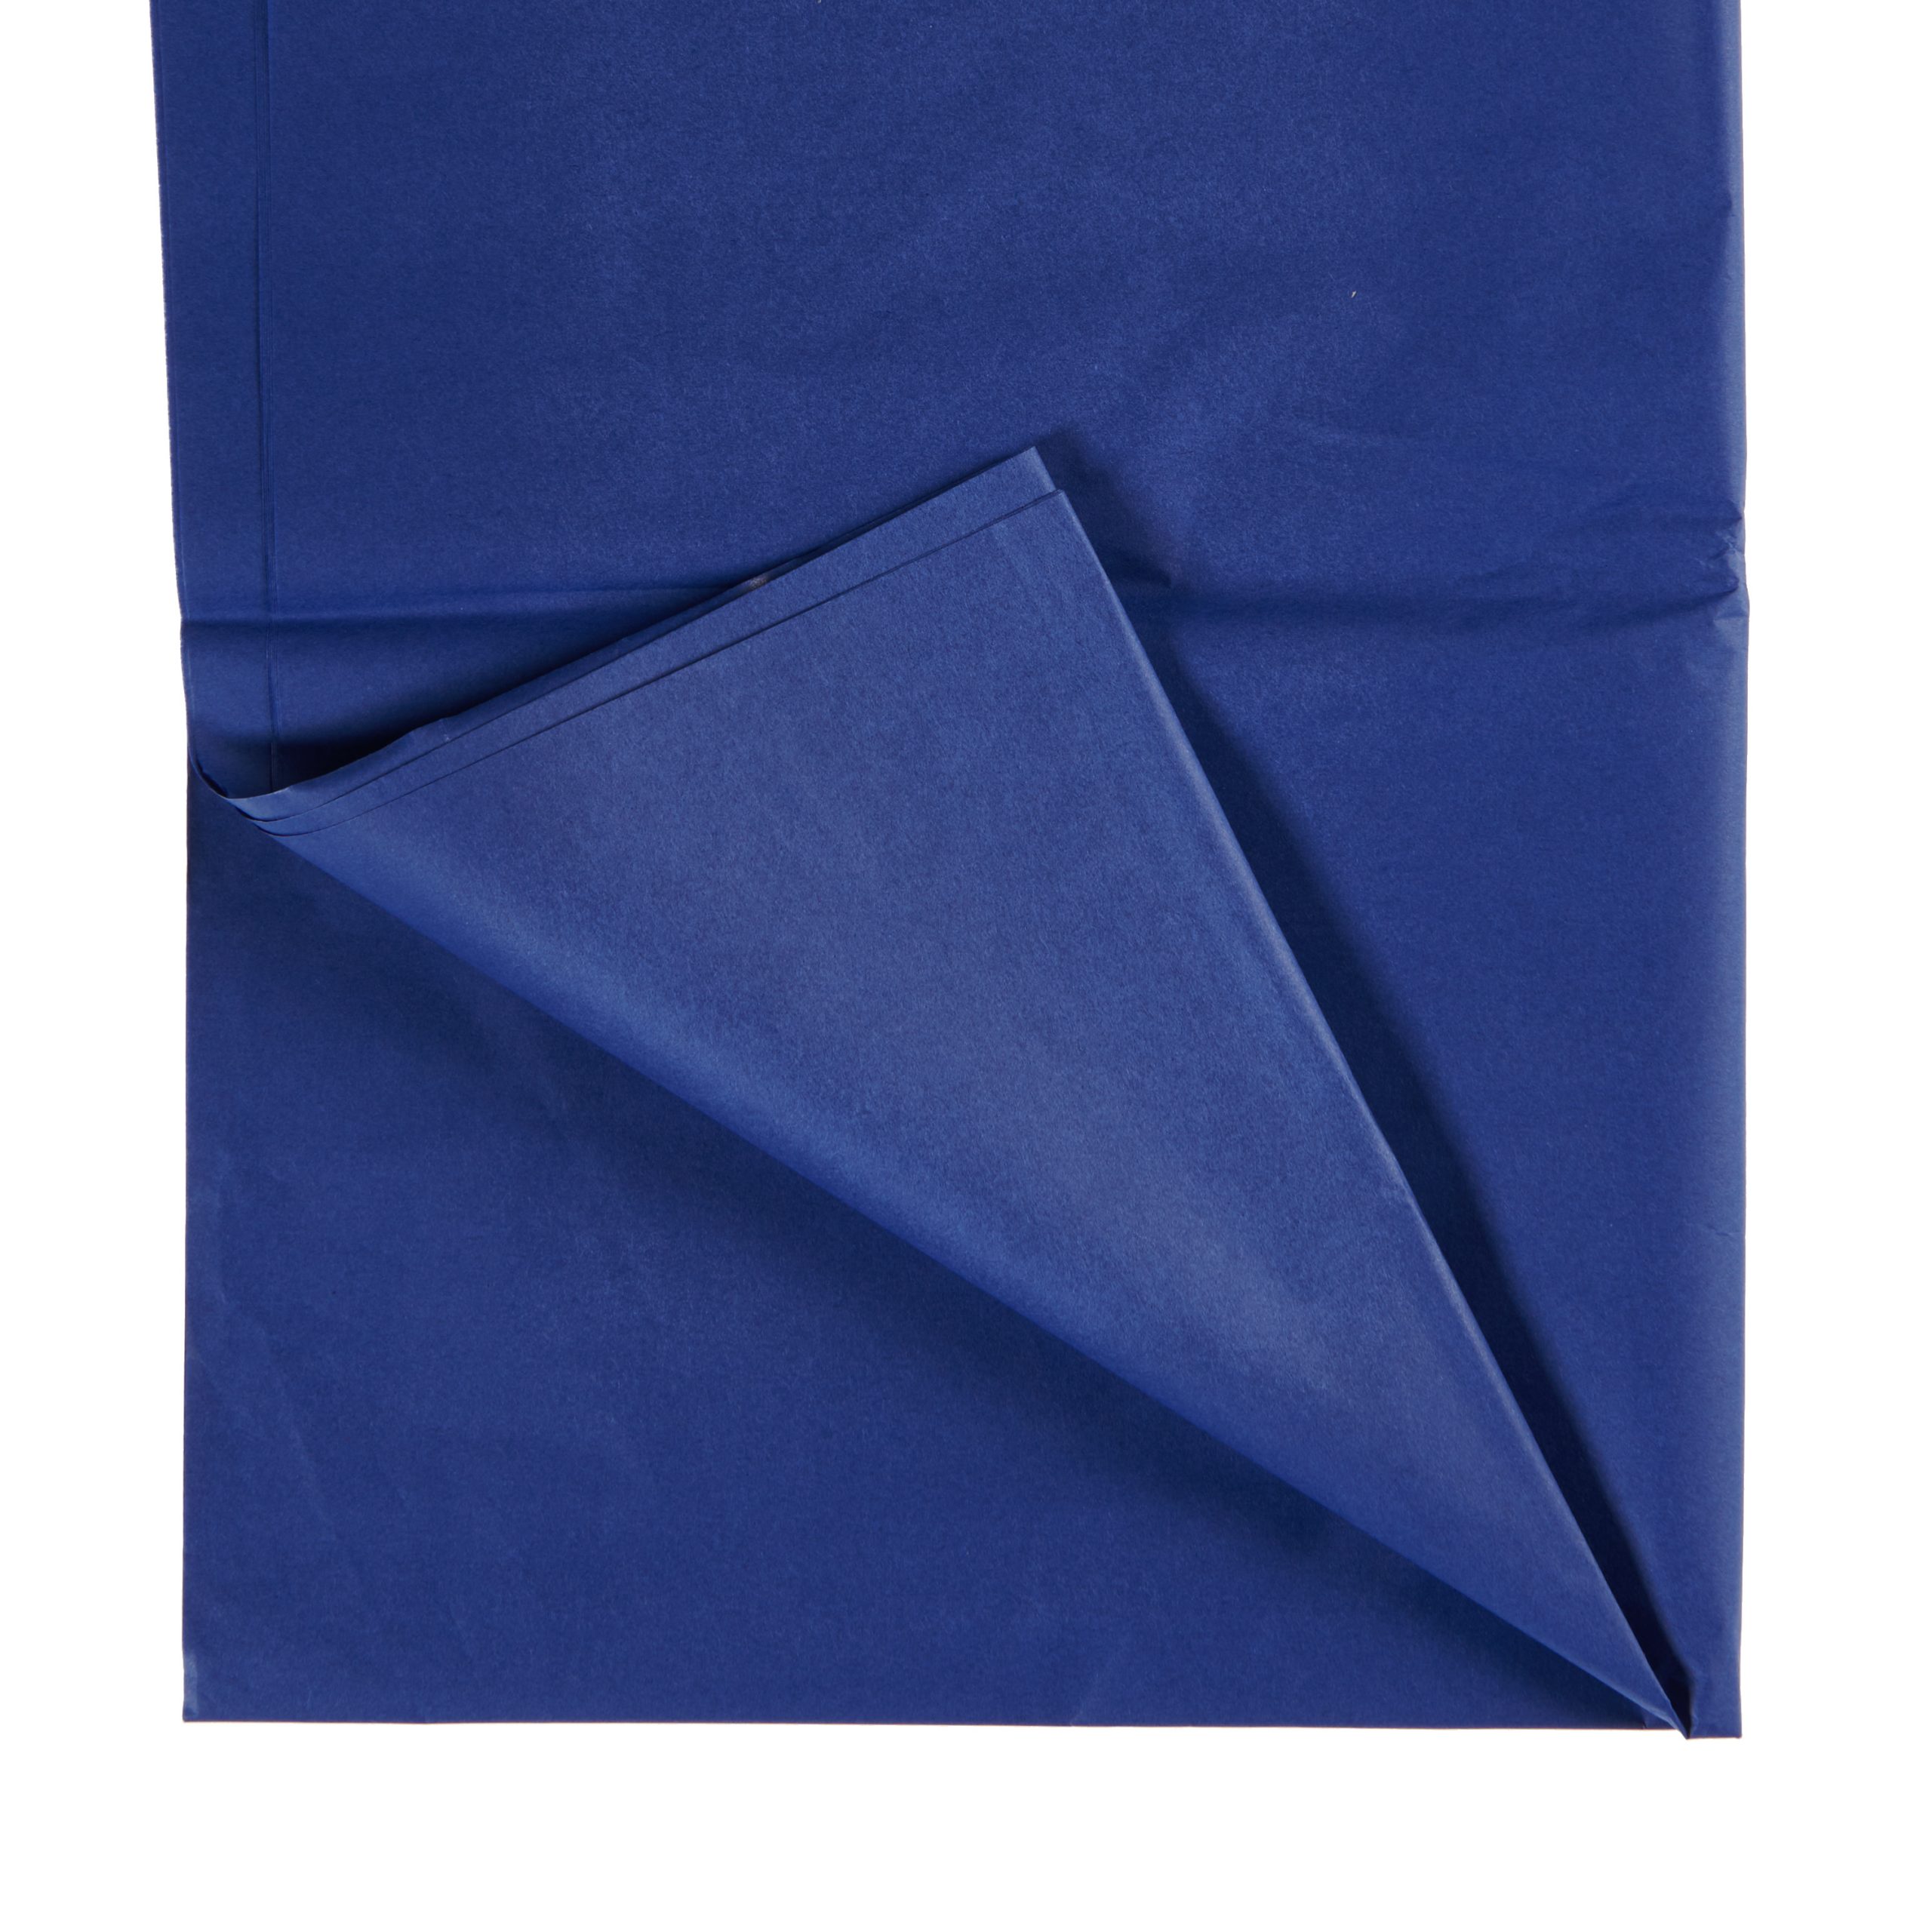 Shredded Coloured Tissue Paper  6 Designs Plain Tissue Paper Blue Printed